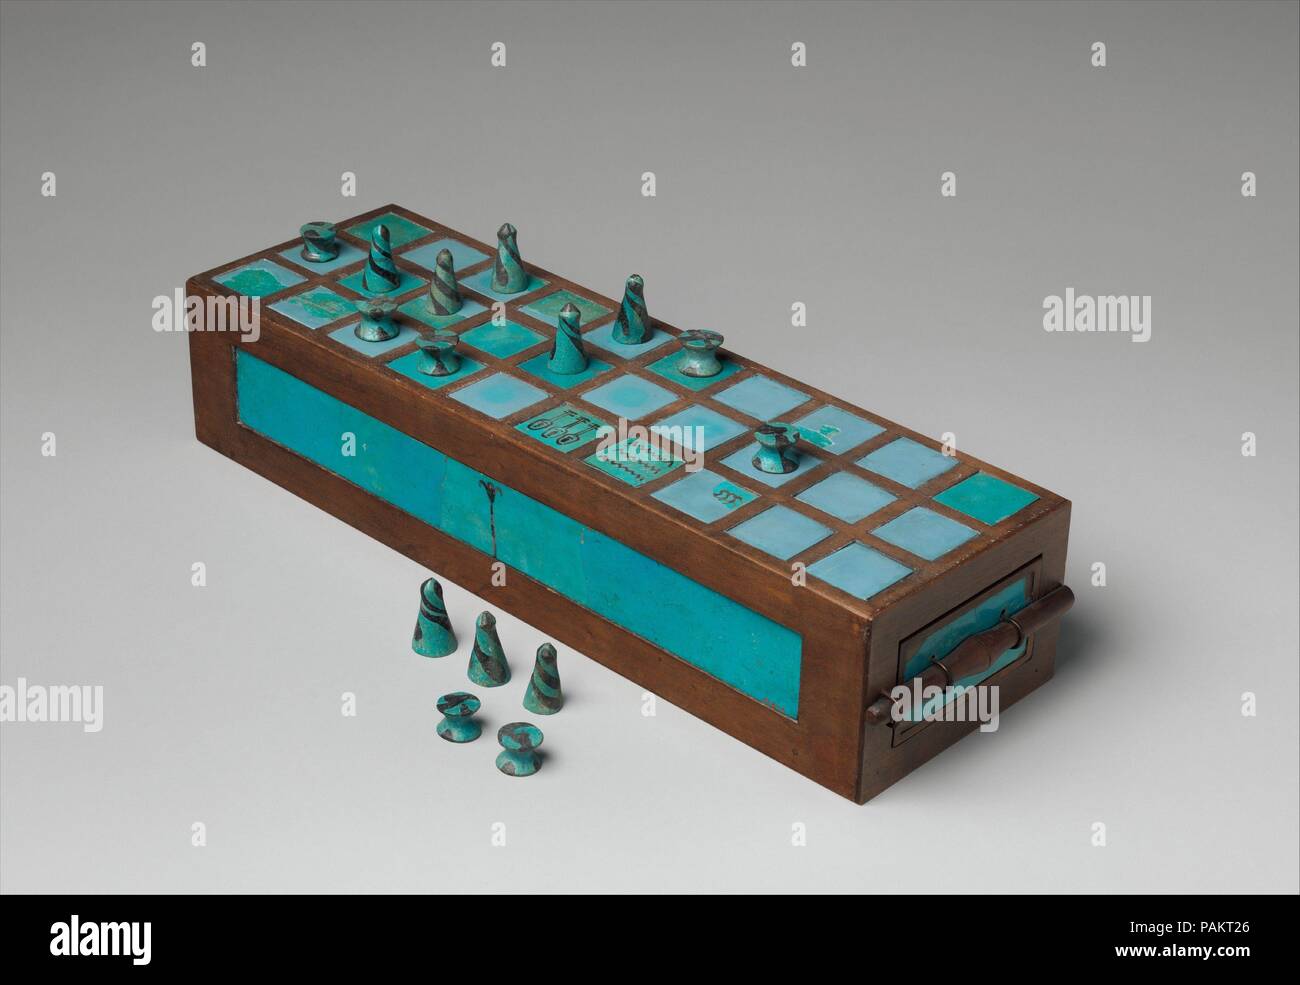 Gameboard e pezzi di gioco. Dimensioni: Ripristino box: L. 43 cm (16 15/16 in.); W. 13,5 cm (5 5/16 in.); H. 9 cm (3 9/16 in.). Dynasty: Dynasty 18. Regno: regno di Thutmosi III. Data: ca. 1550-1295 A.C. Il blue faience intarsi di questa finestra di gioco e i pezzi di gioco (01.4.1b-h e 01.4.1i-p) sono state scoperte in una tomba a Abydos. Questa tomba conteneva anche uno scarabeo inscritto con il cartiglio di Thutmose III, un papiro burnisher inscritto con il nome e il titolo di scriba Merymaat, un orecchino in argento e un dipinto di pot. Solo alcune delle maioliche intarsi di confezione originale sono stati conservati. La a Foto Stock